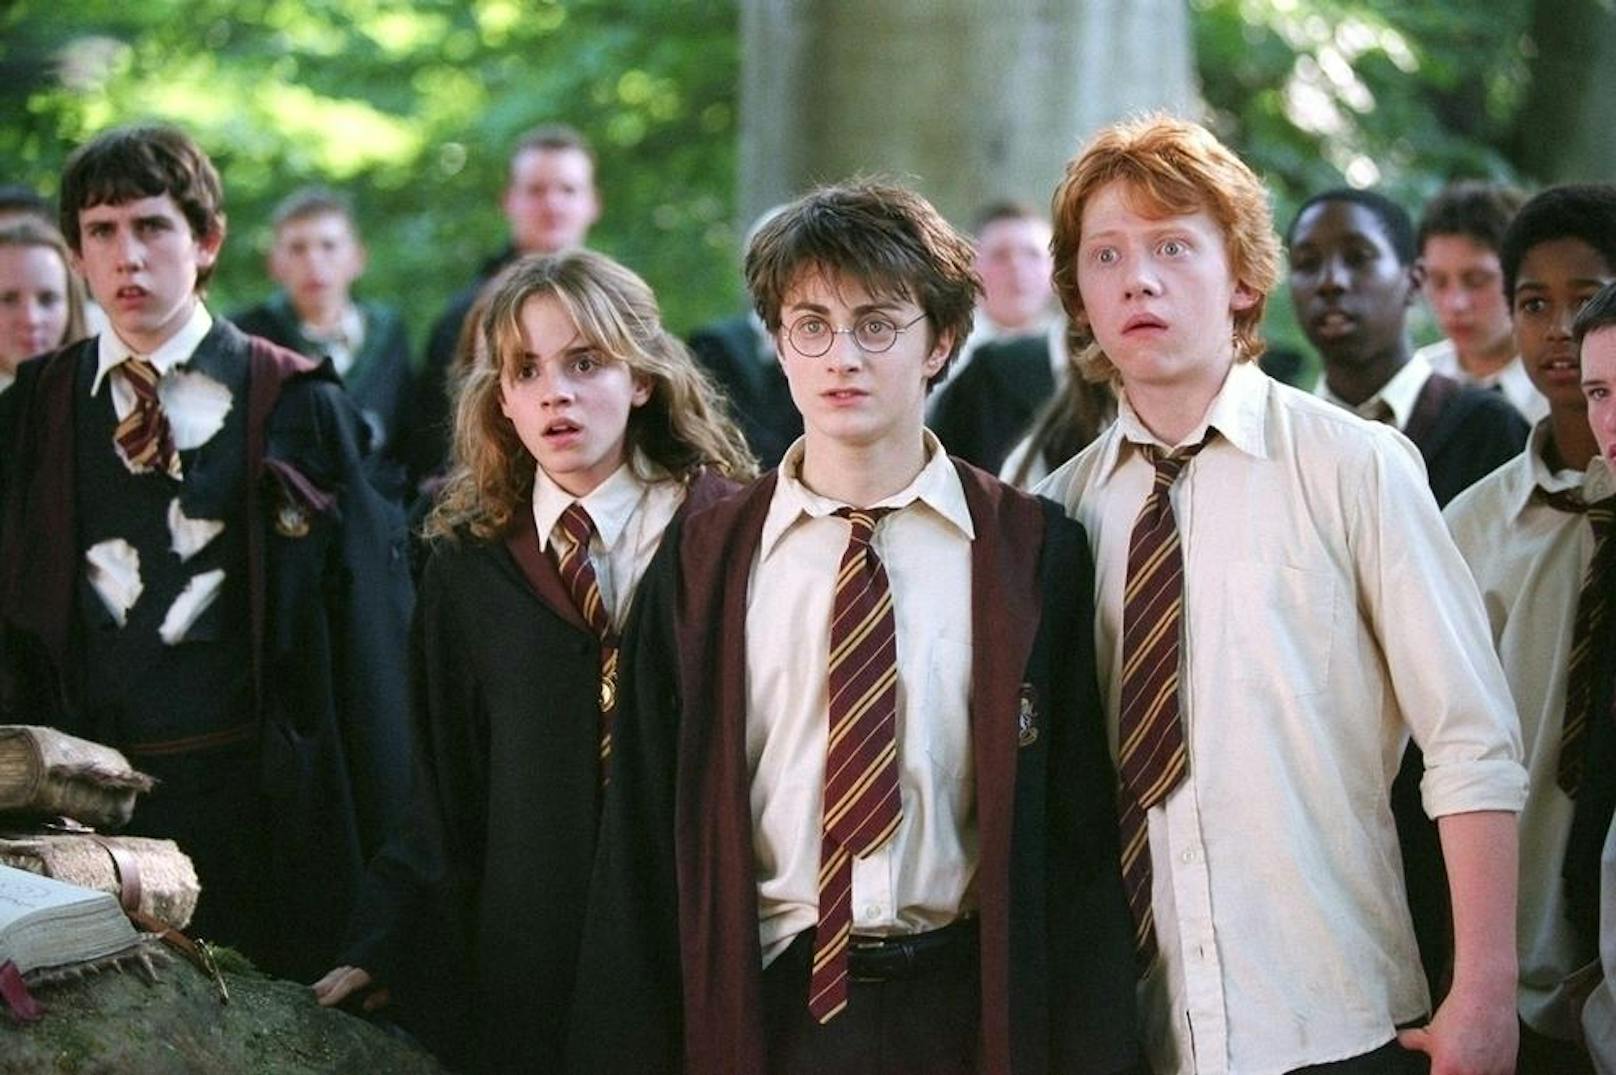 Vorne, von links: Emma Watson, Daniel Radcliffe und Rupert Grint in "Harry Potter und der Gefangene von Askaban".